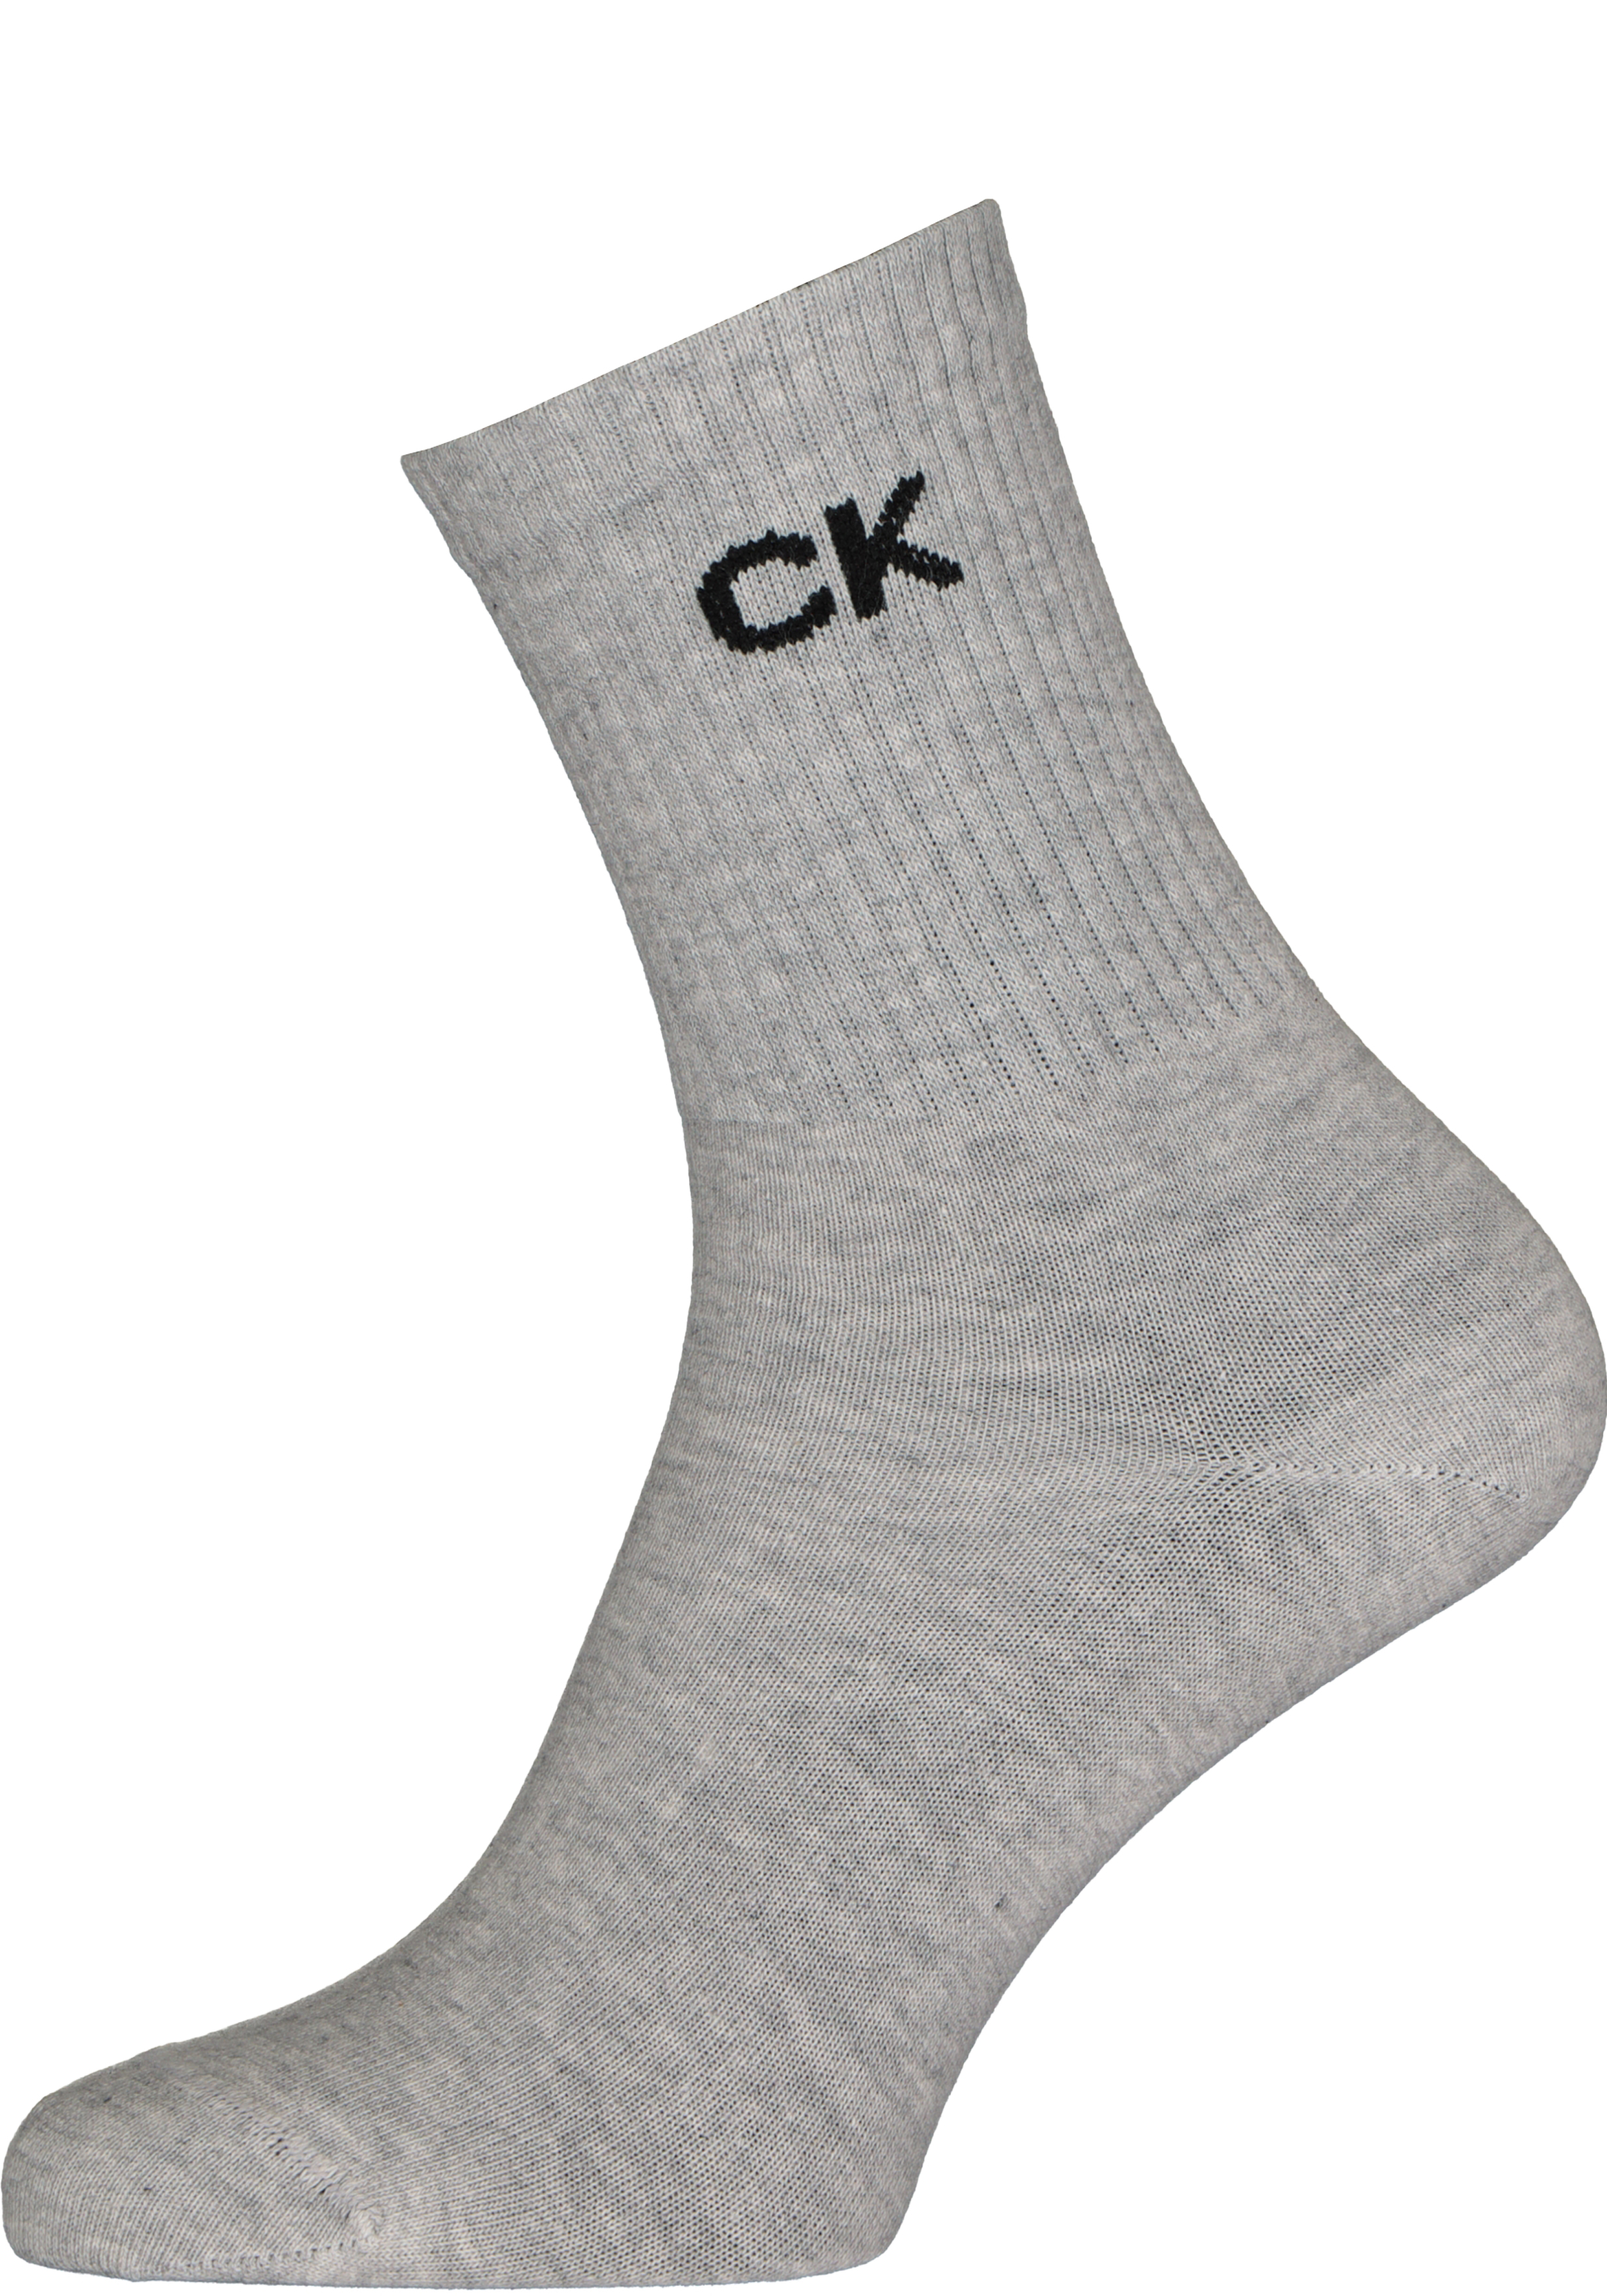 Persoonlijk rommel zeemijl Calvin Klein damessokken Keira (1-pack), korte sokken, grijs - Zomer SALE  tot 50% korting